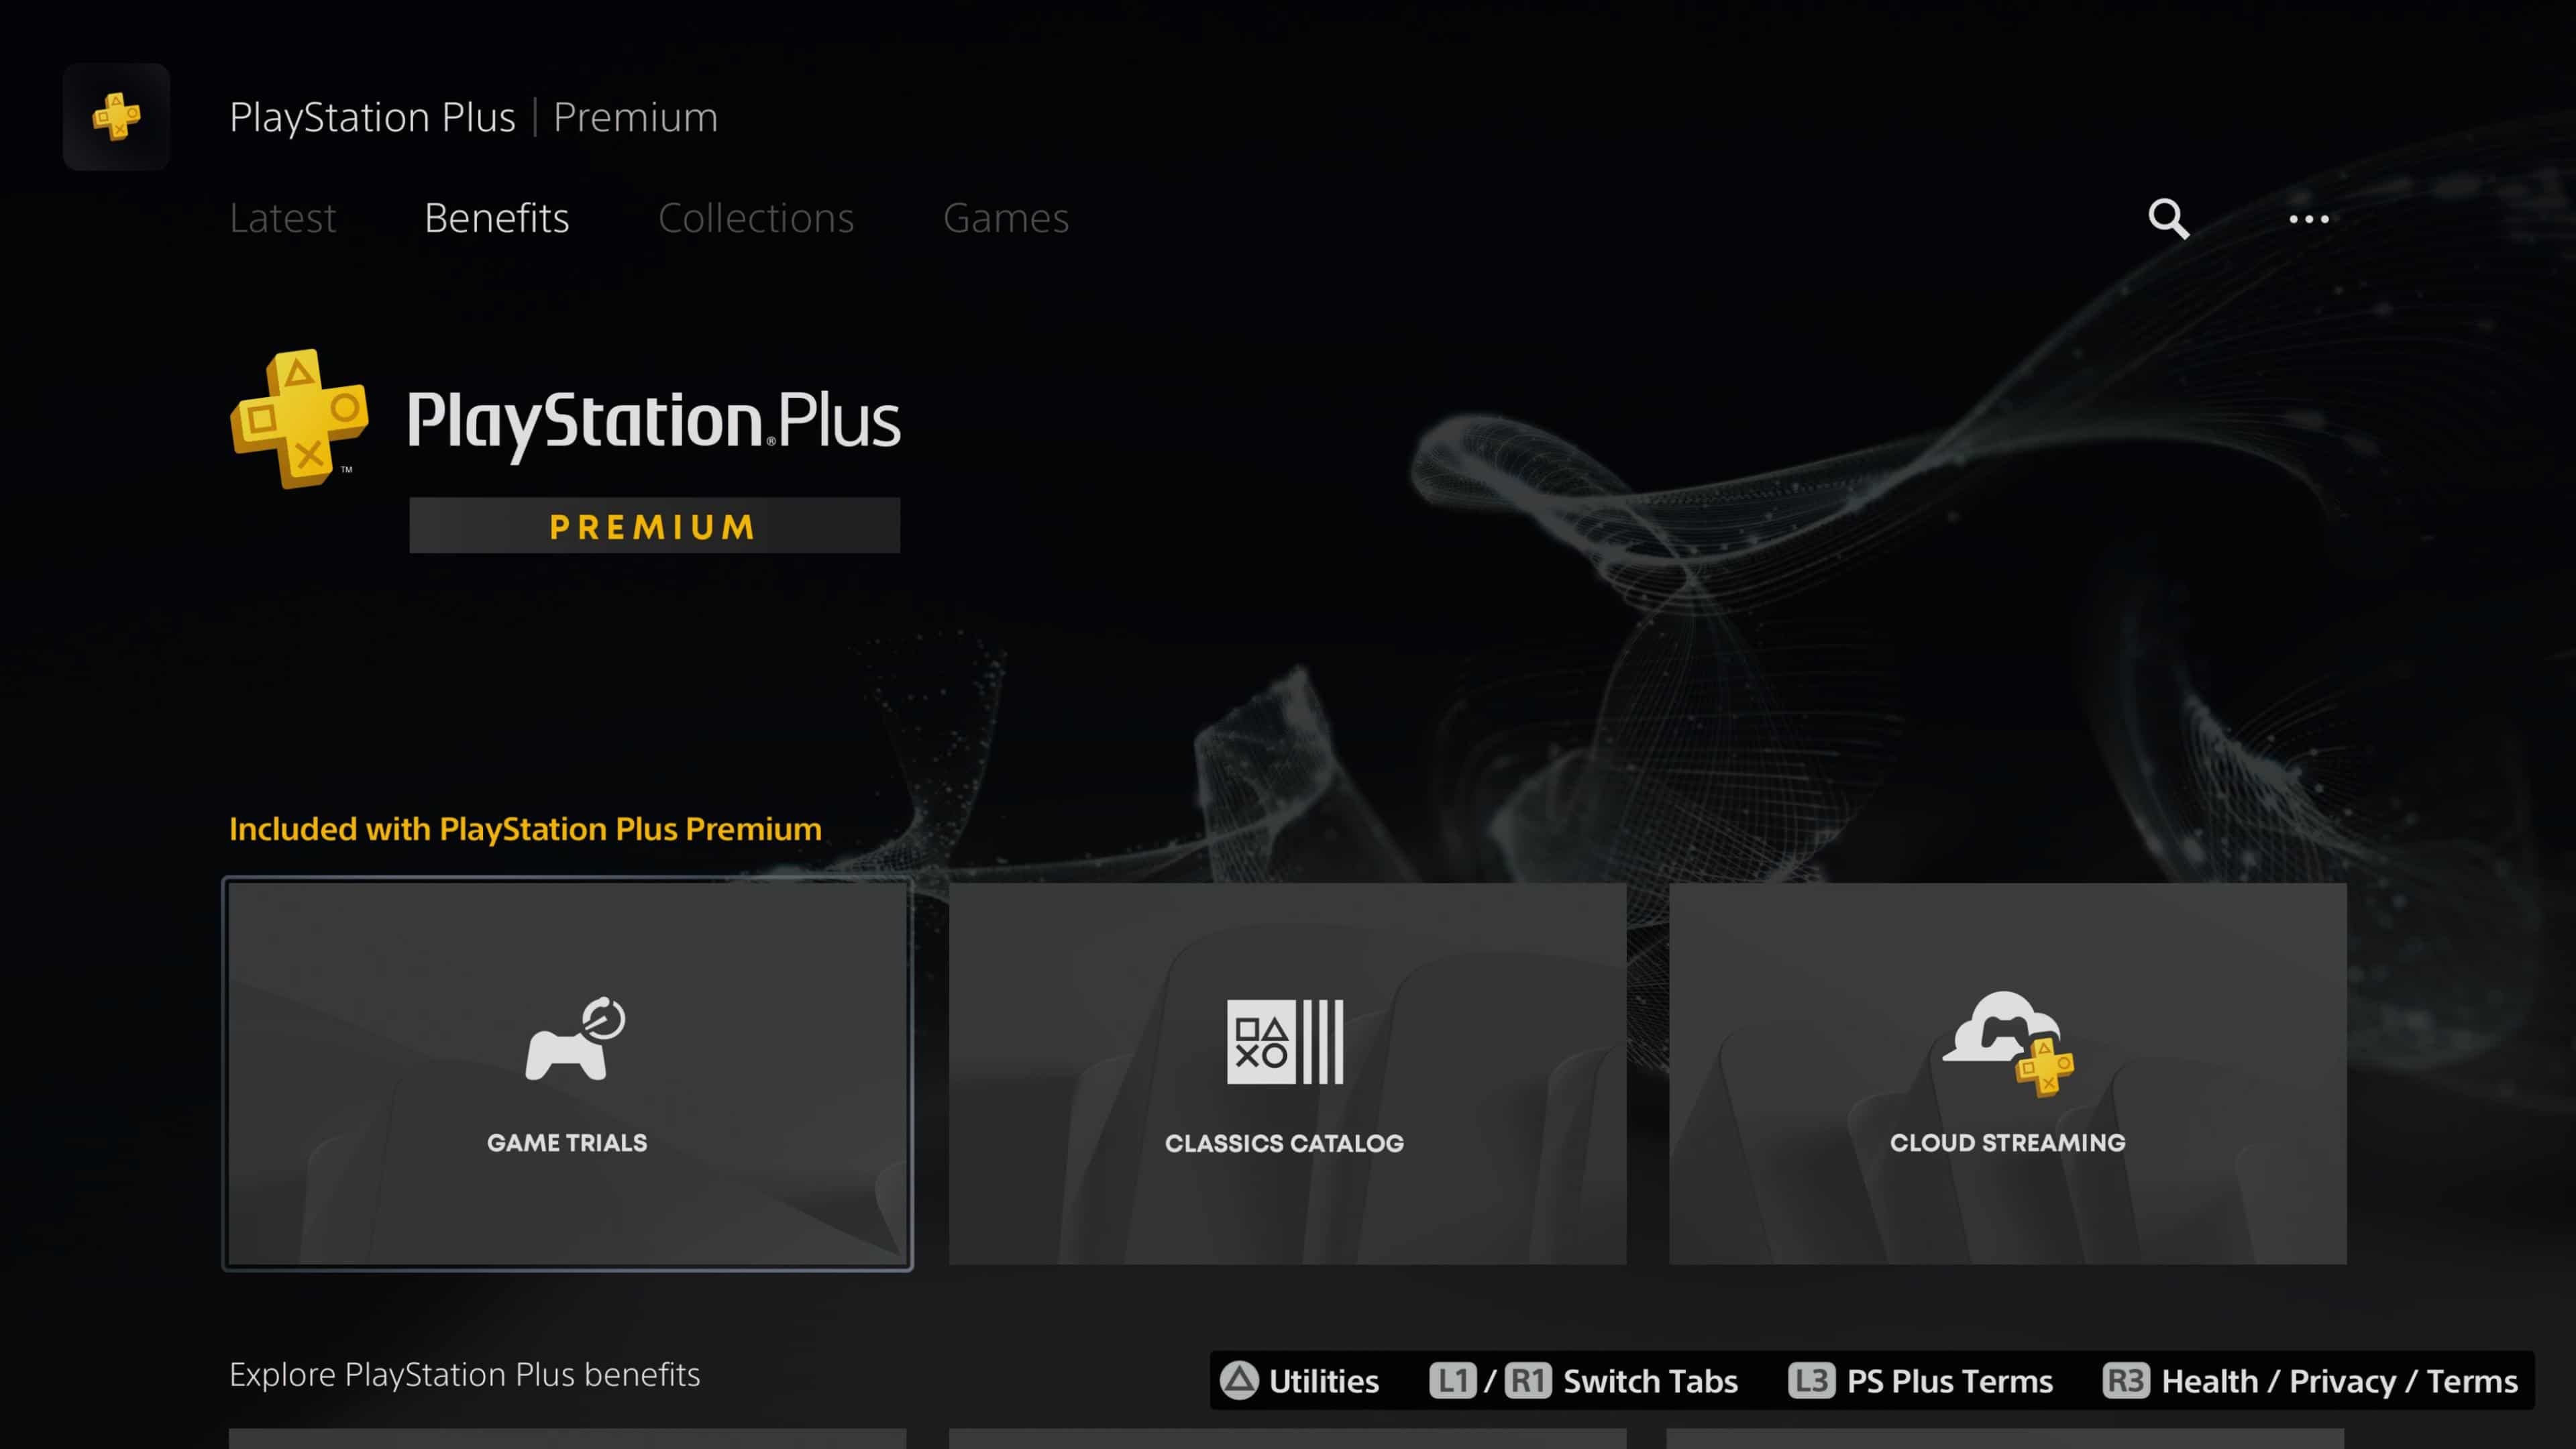 Nuevo servicio de PlayStation Plus ¿Compite con Xbox Game Pass? aquí te damos nuestras impresiones